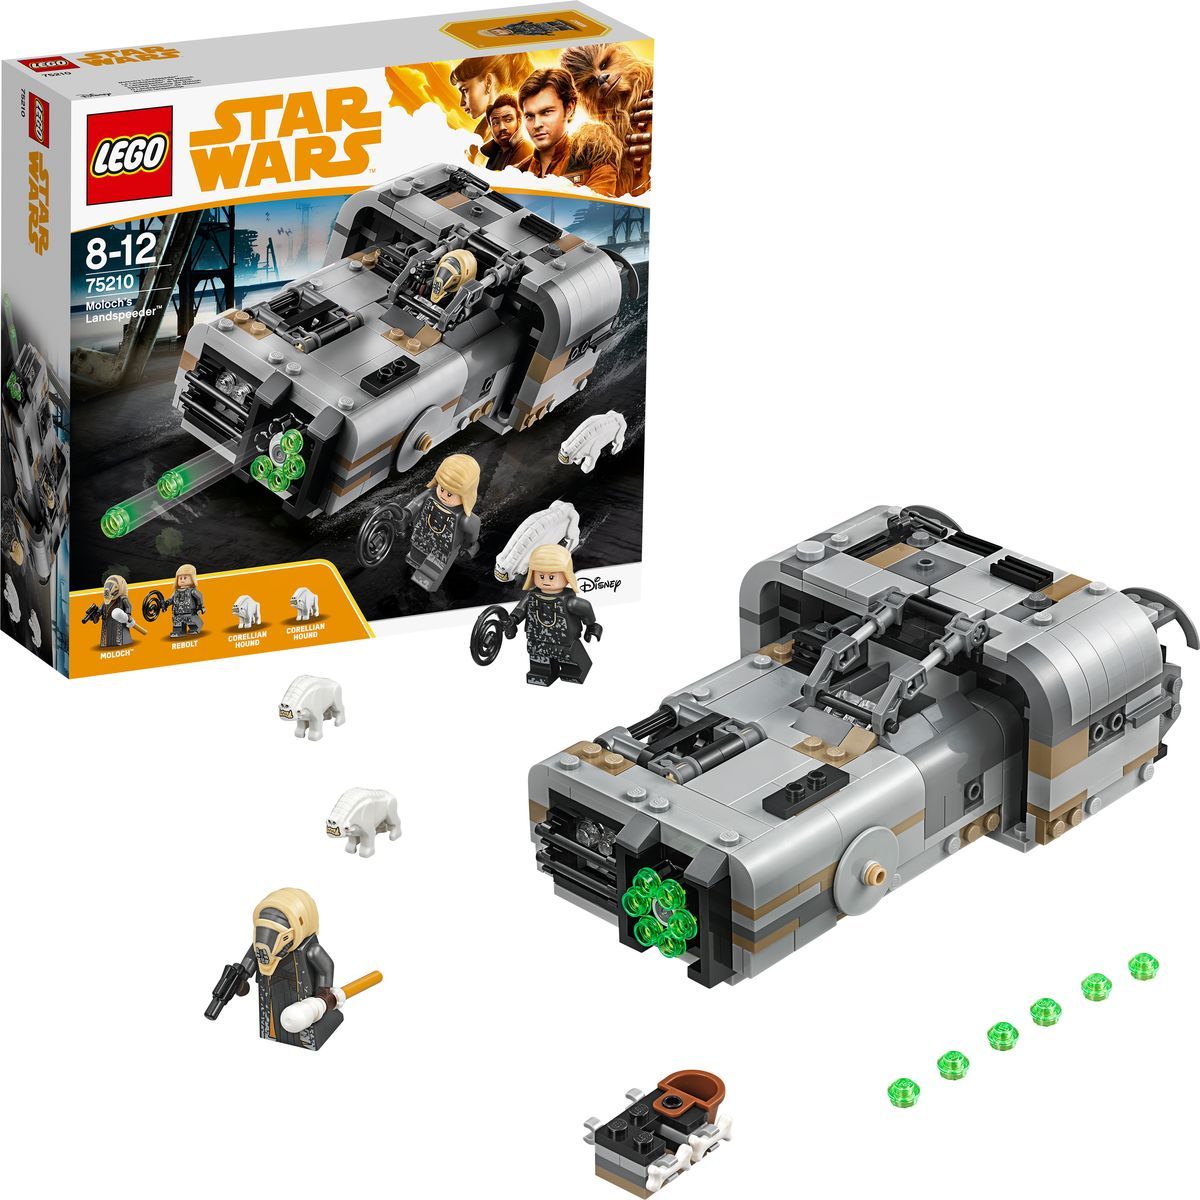 LEGO Star Wars 75210   